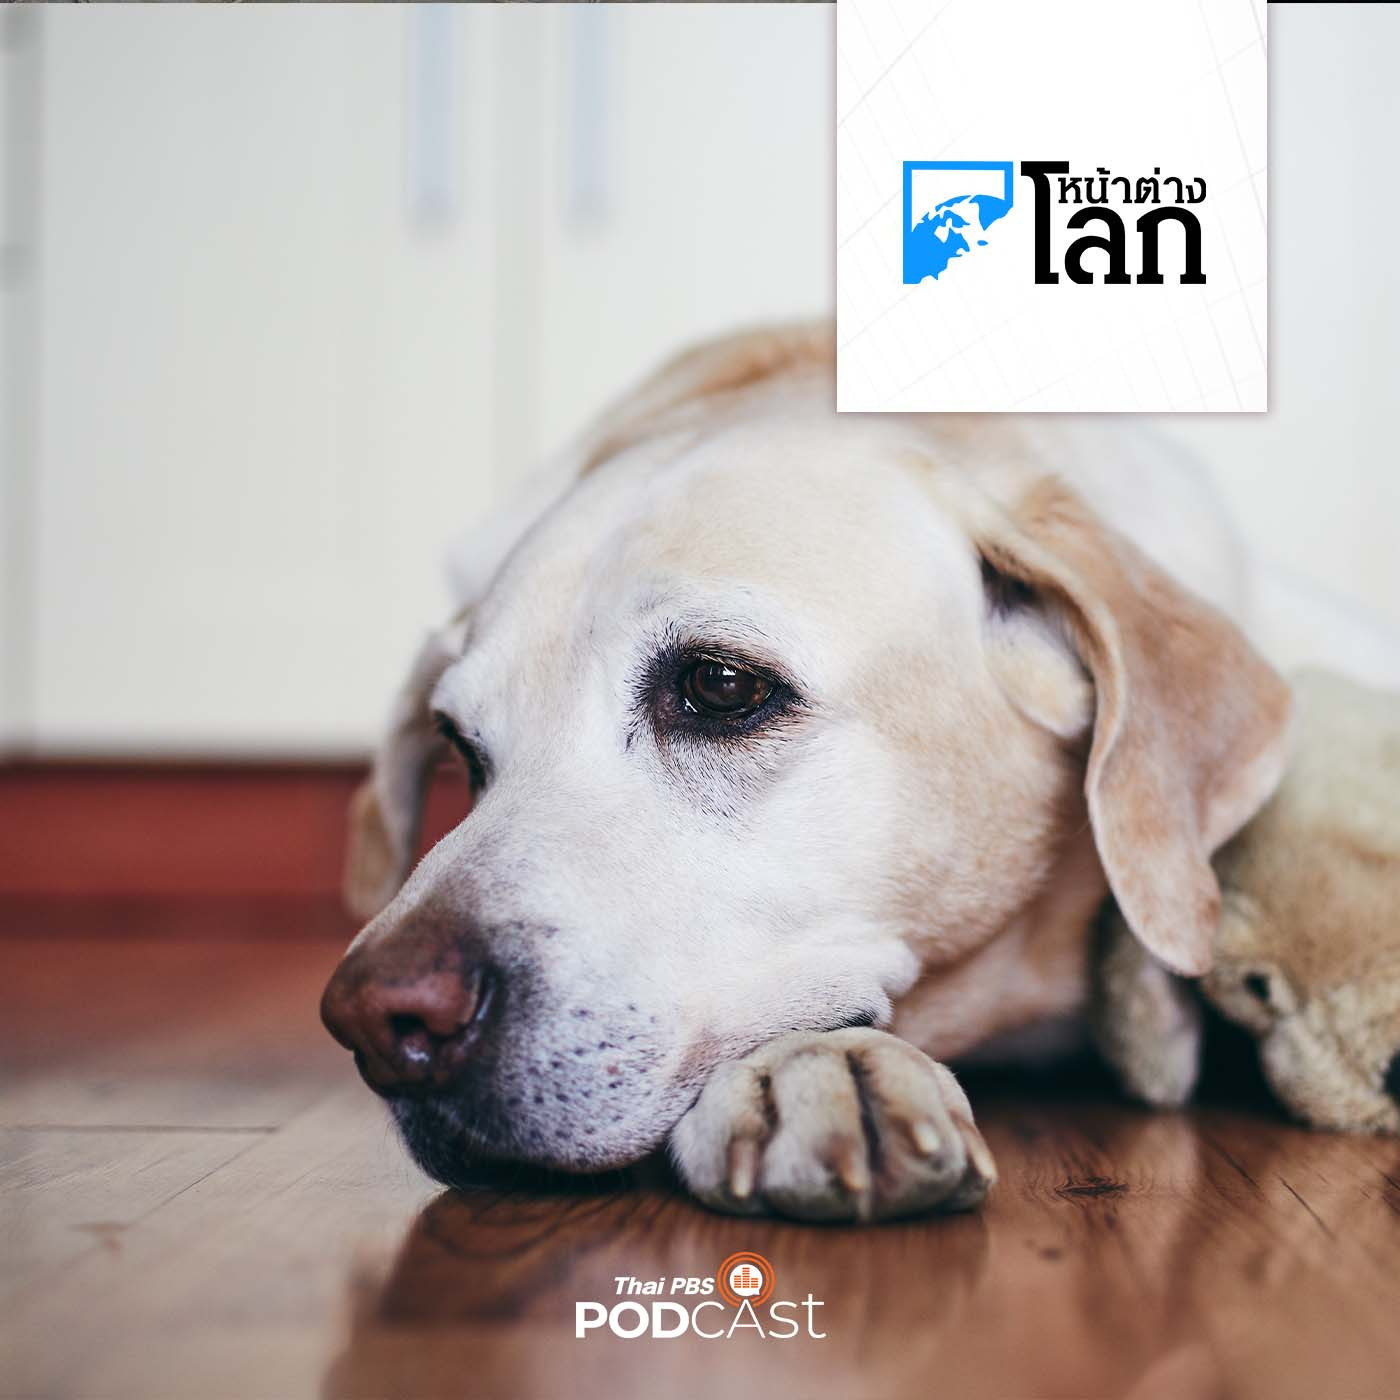 หน้าต่างโลก : สุนัขเสี่ยงภาวะสมองเสื่อมเพิ่มขึ้นทุกปี หลังอายุครบ 10 ปี